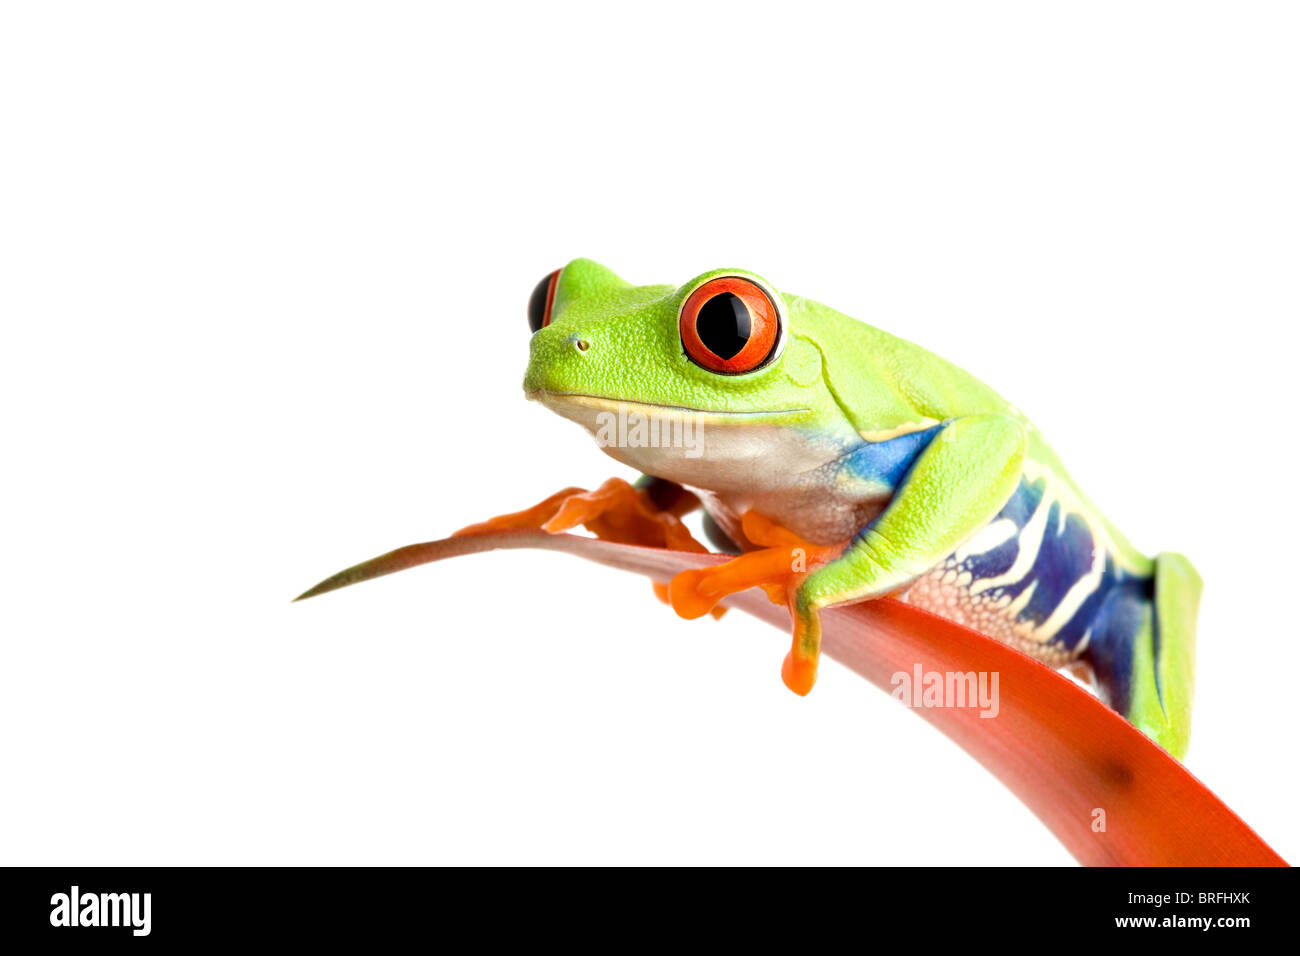 Grenouille sur une feuille isolated on white, une grenouille arboricole aux yeux rouges (agalychnis callidryas) perché sur la feuille d'un guzmania, libre. Banque D'Images